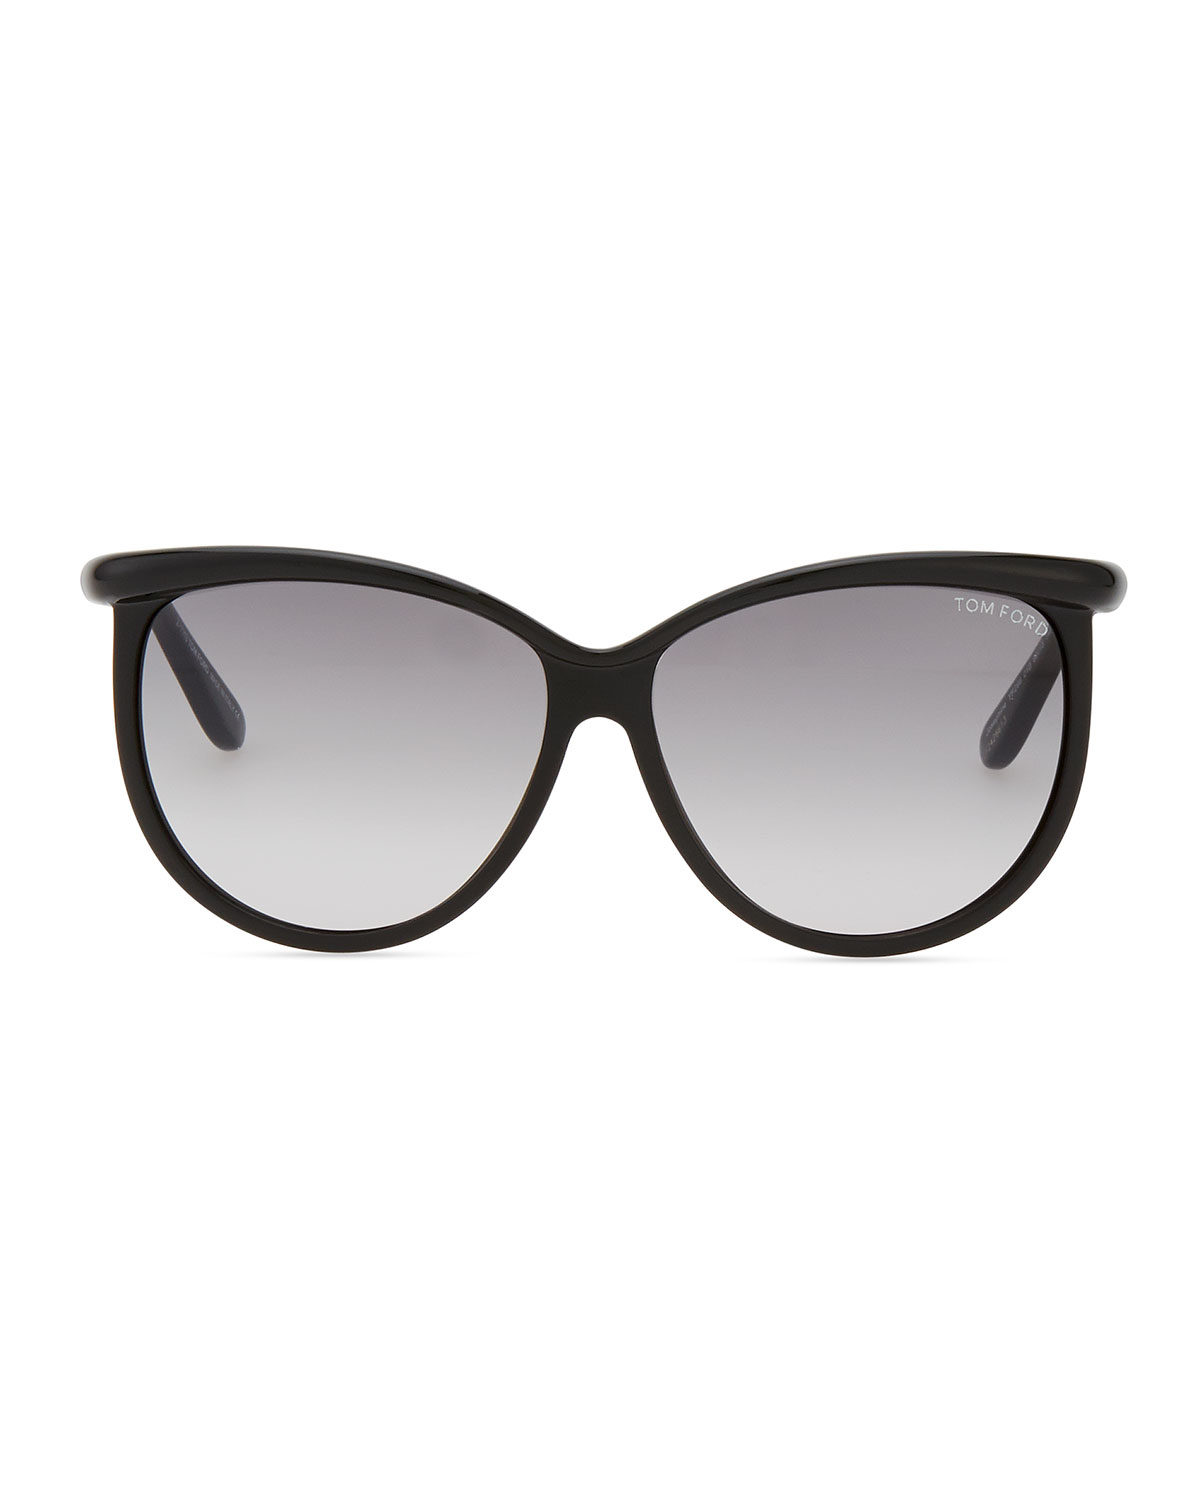 Lyst - Tom ford Josephine Enamel Sunglasses Black in Black